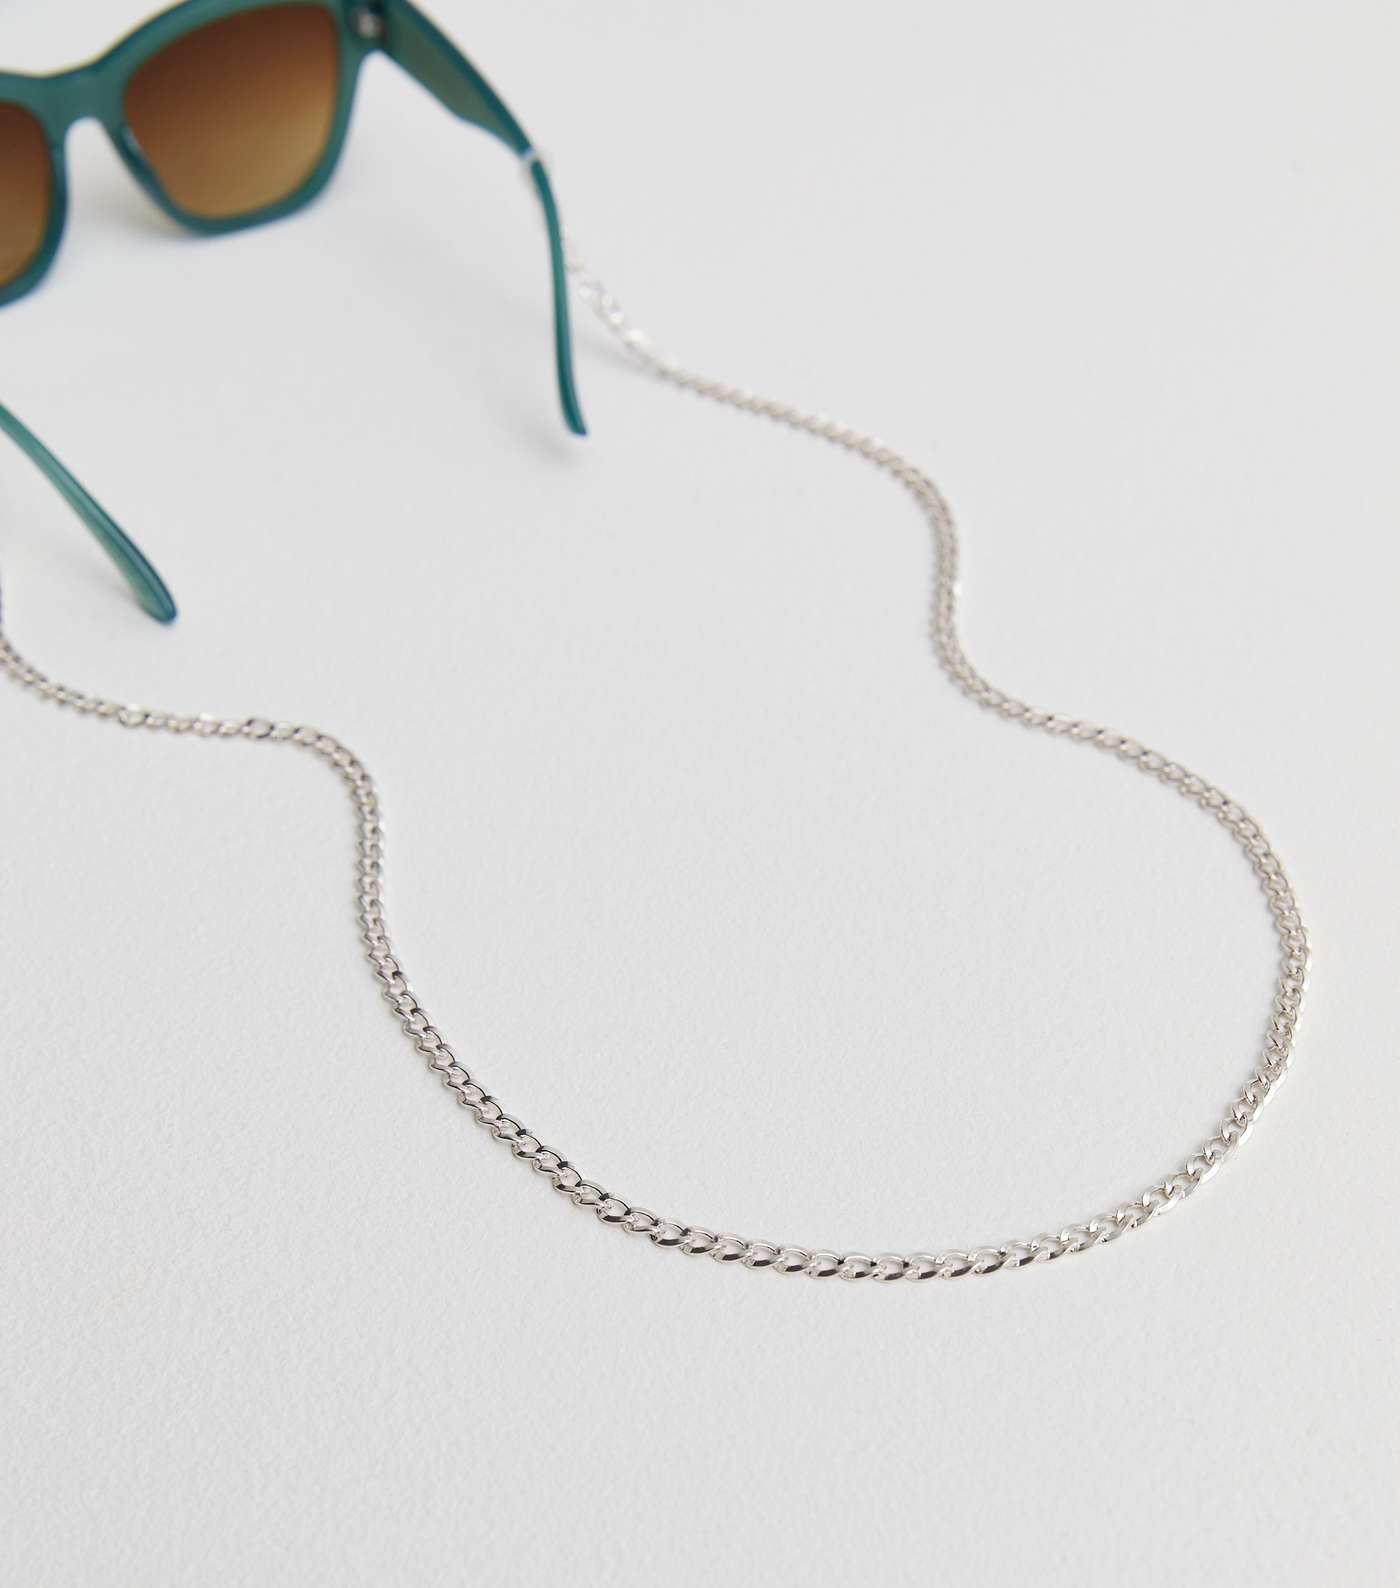 Silver Sunglasses Chain Image 2